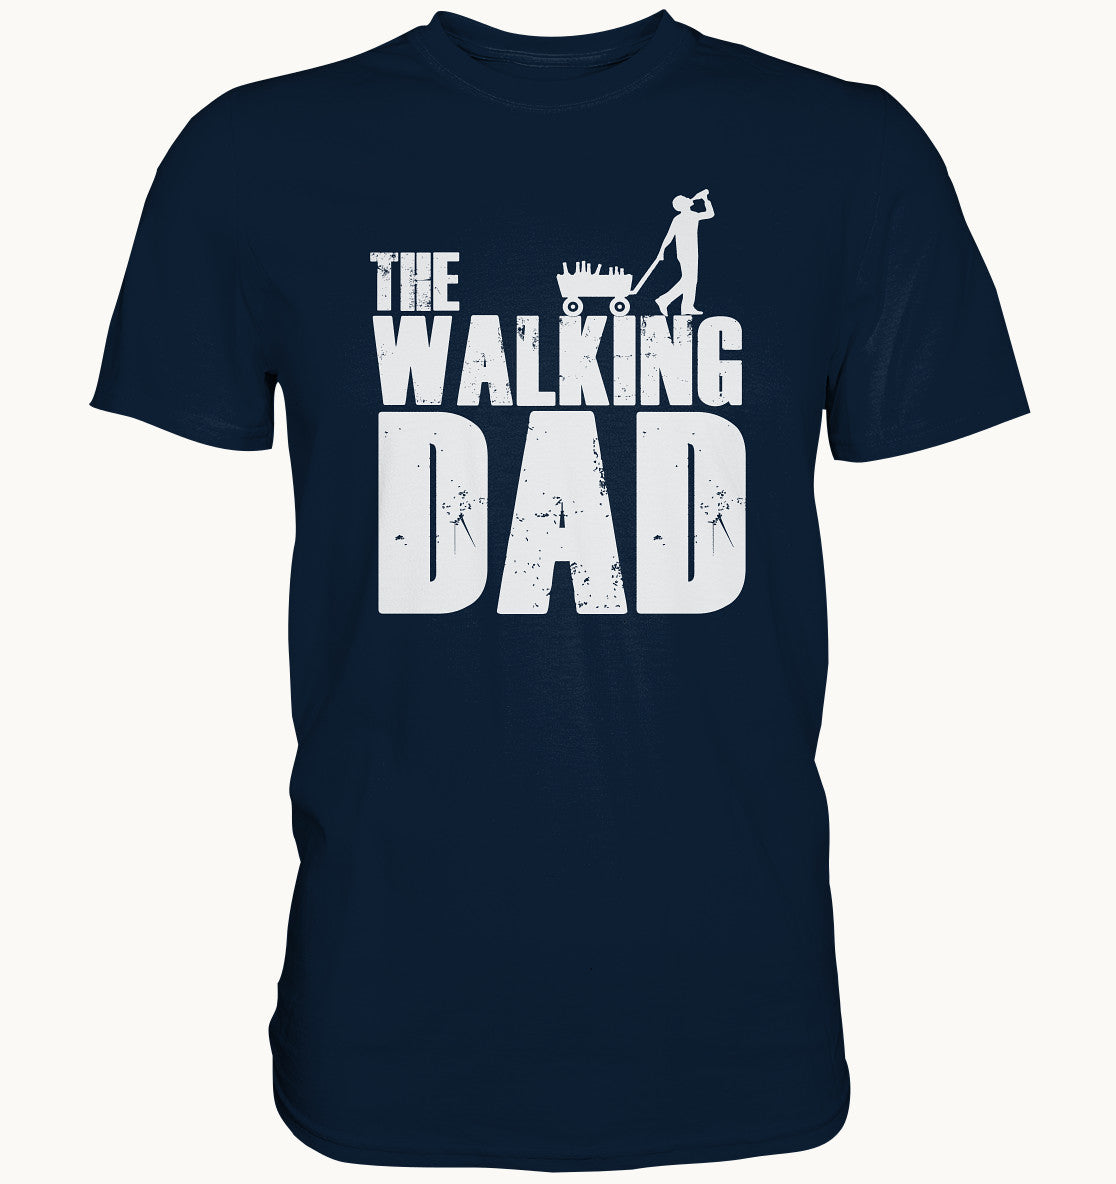 The Walking Dad - Premium Shirt